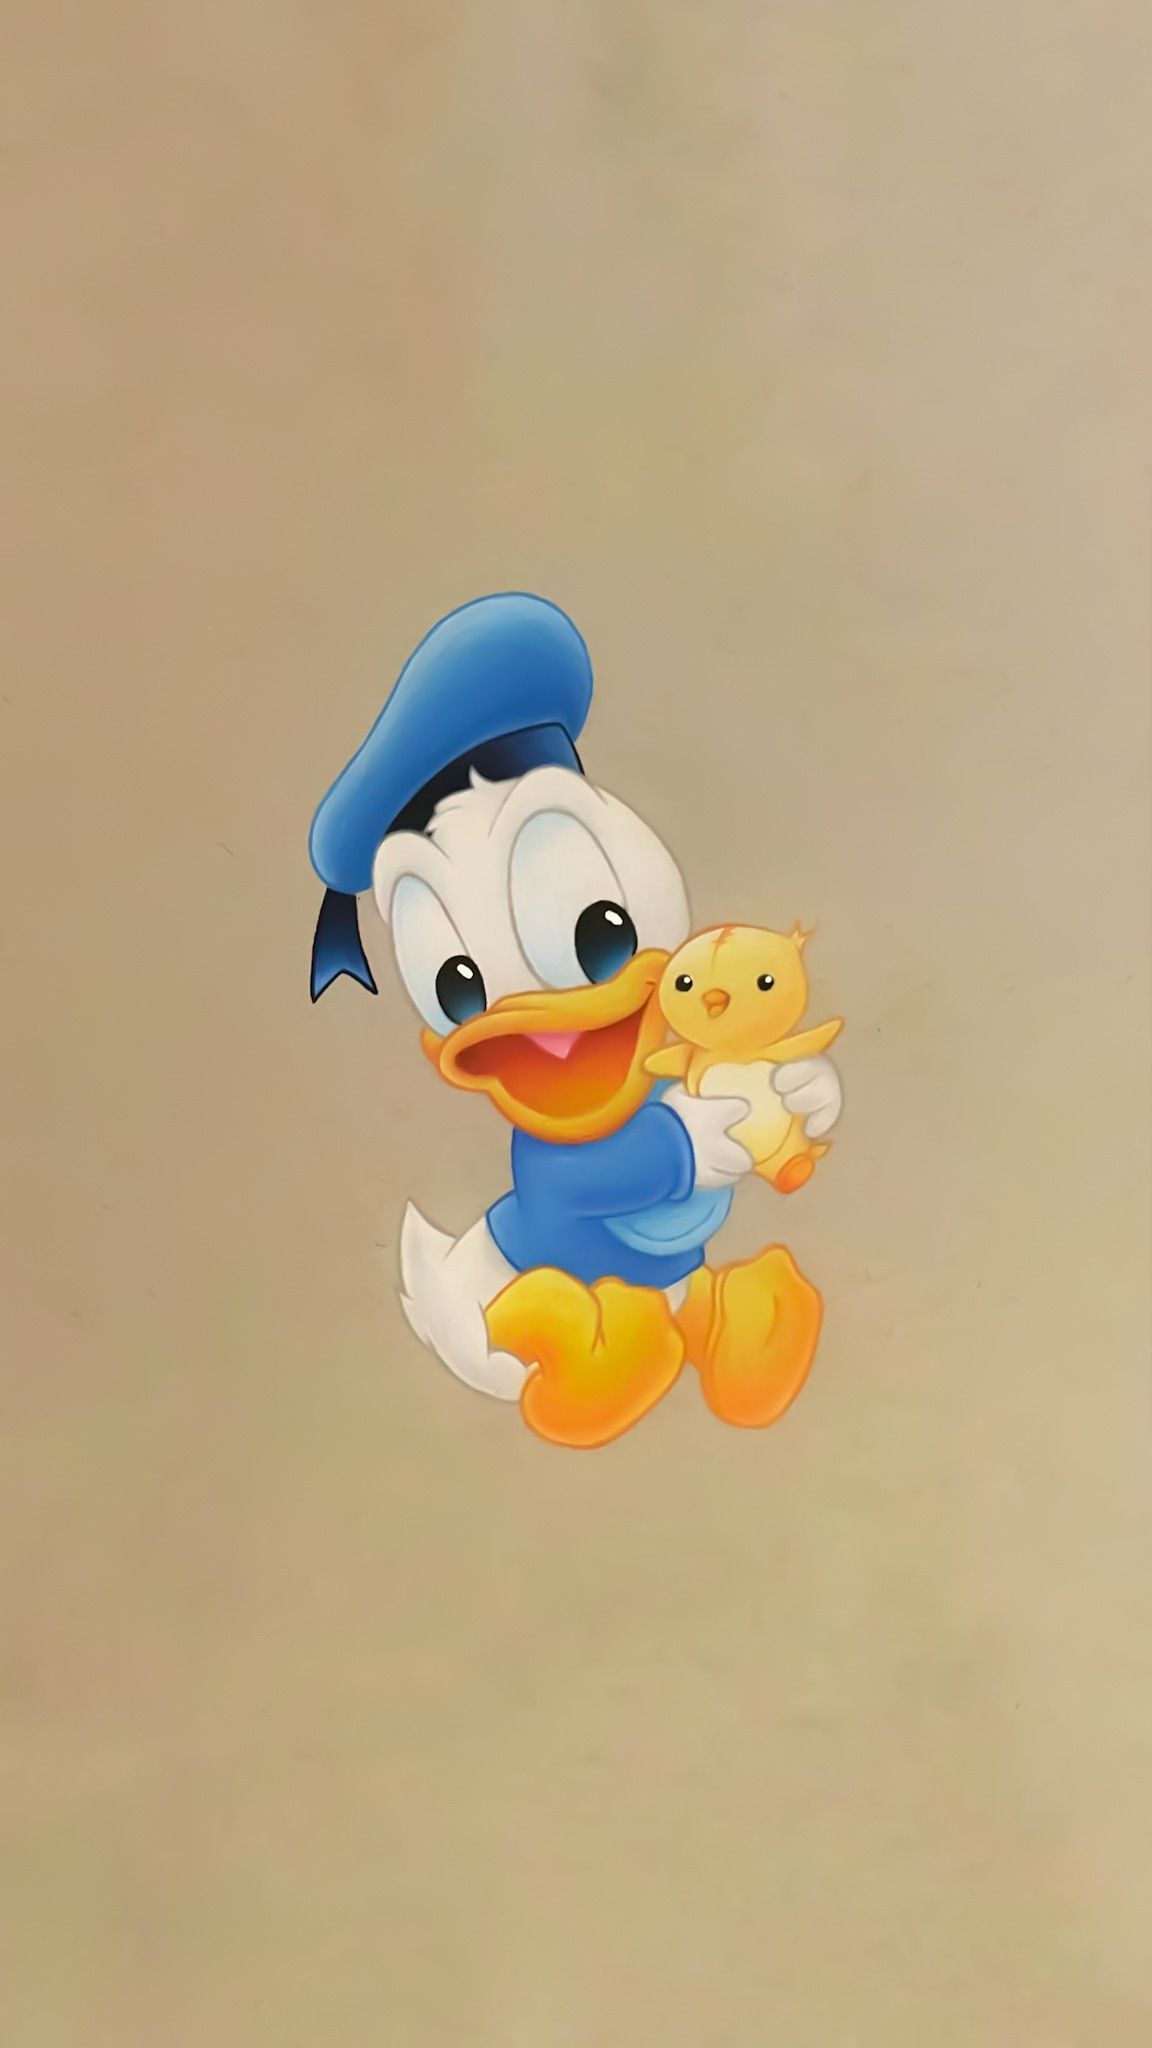 Donld & Daisy Duck. Cute cartoon wallpaper, Cartoon wallpaper iphone, Cute disney characters